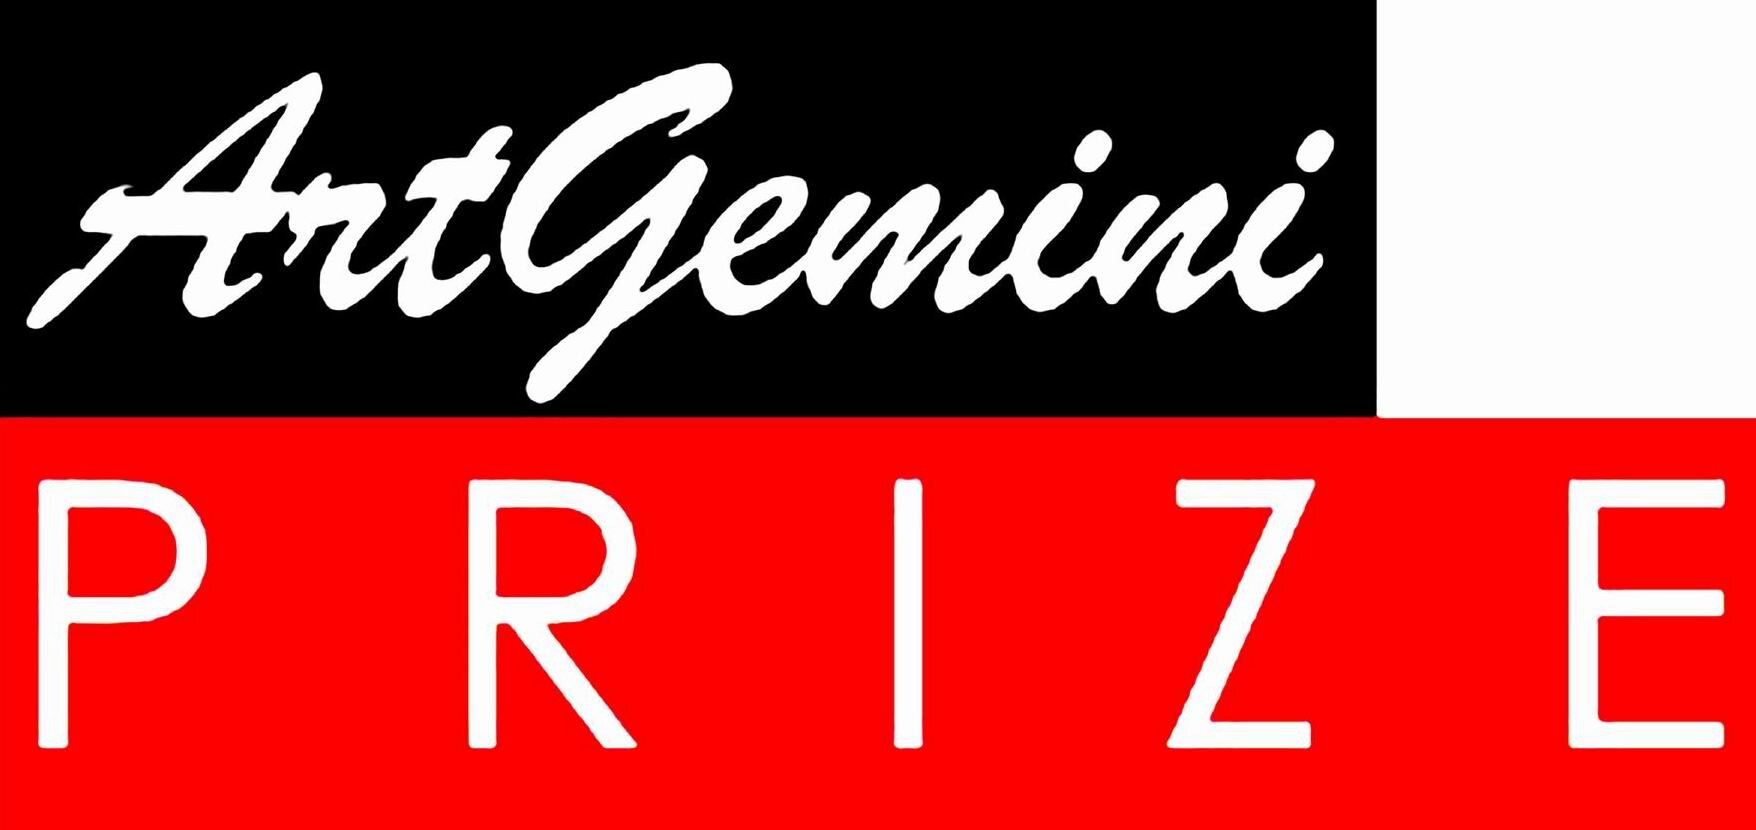 Art Gemini logo.jpg